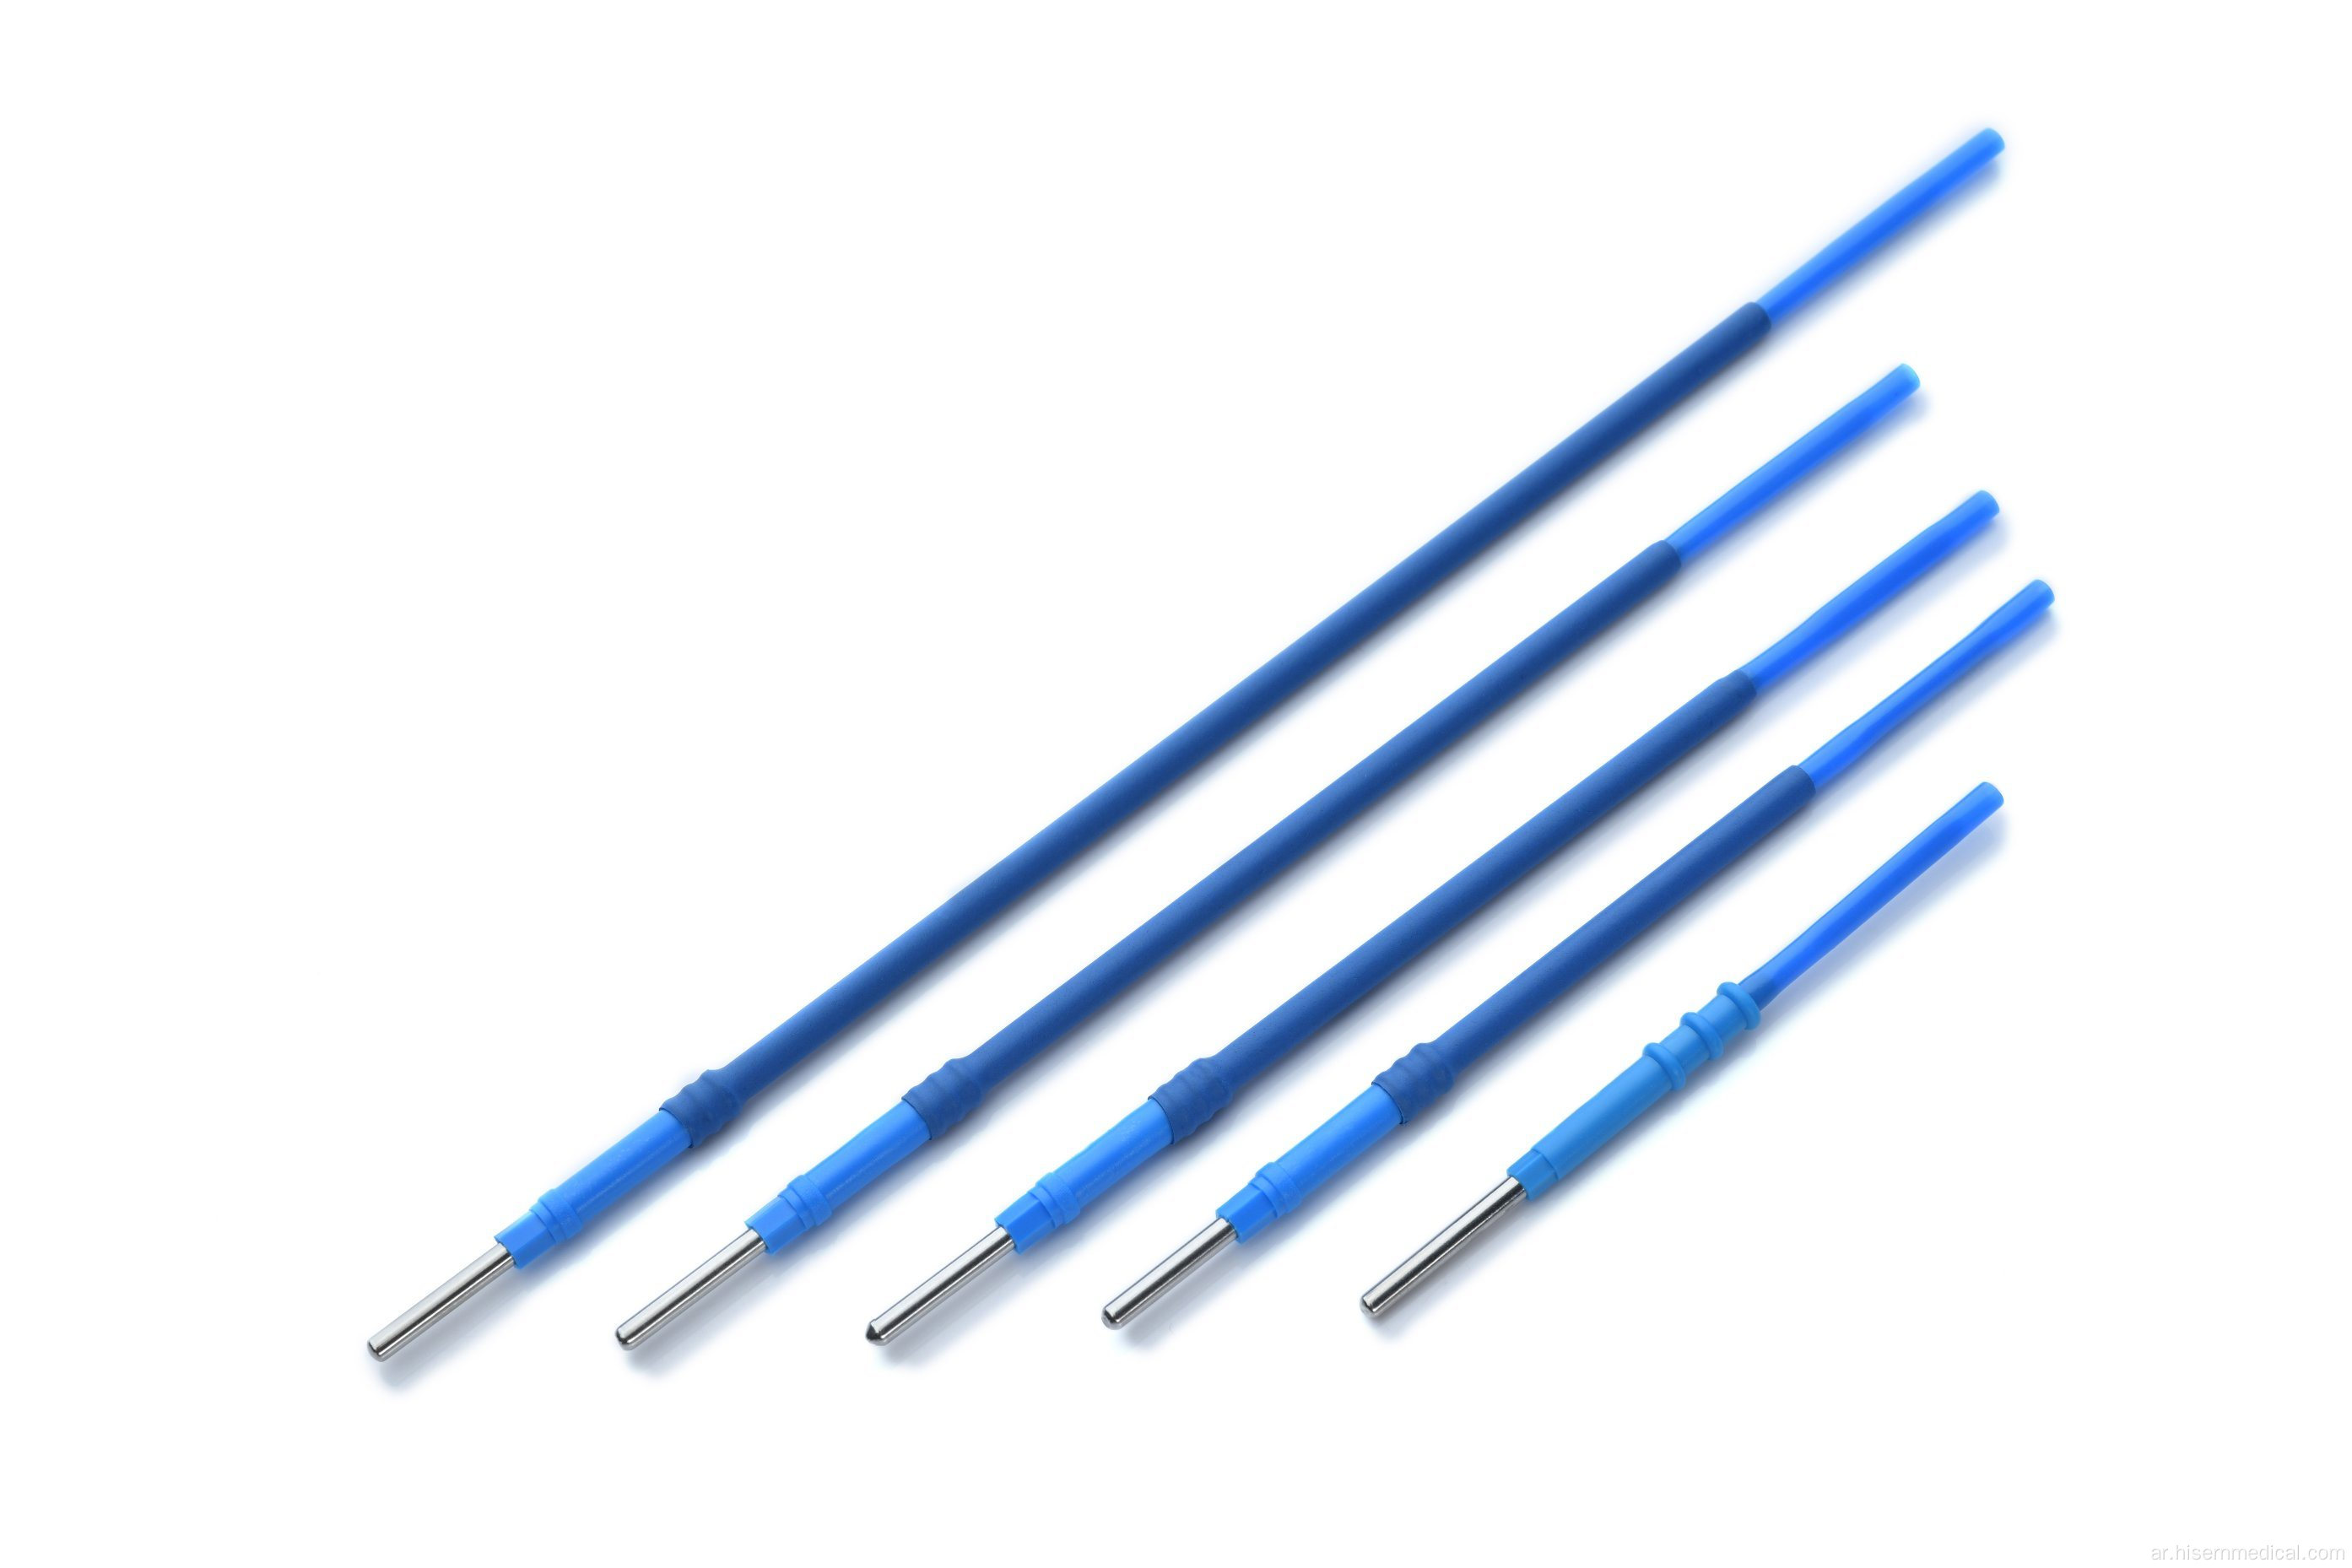 قلم جراحي كهربائي يستخدم لتشريح الأنسجة البيولوجية